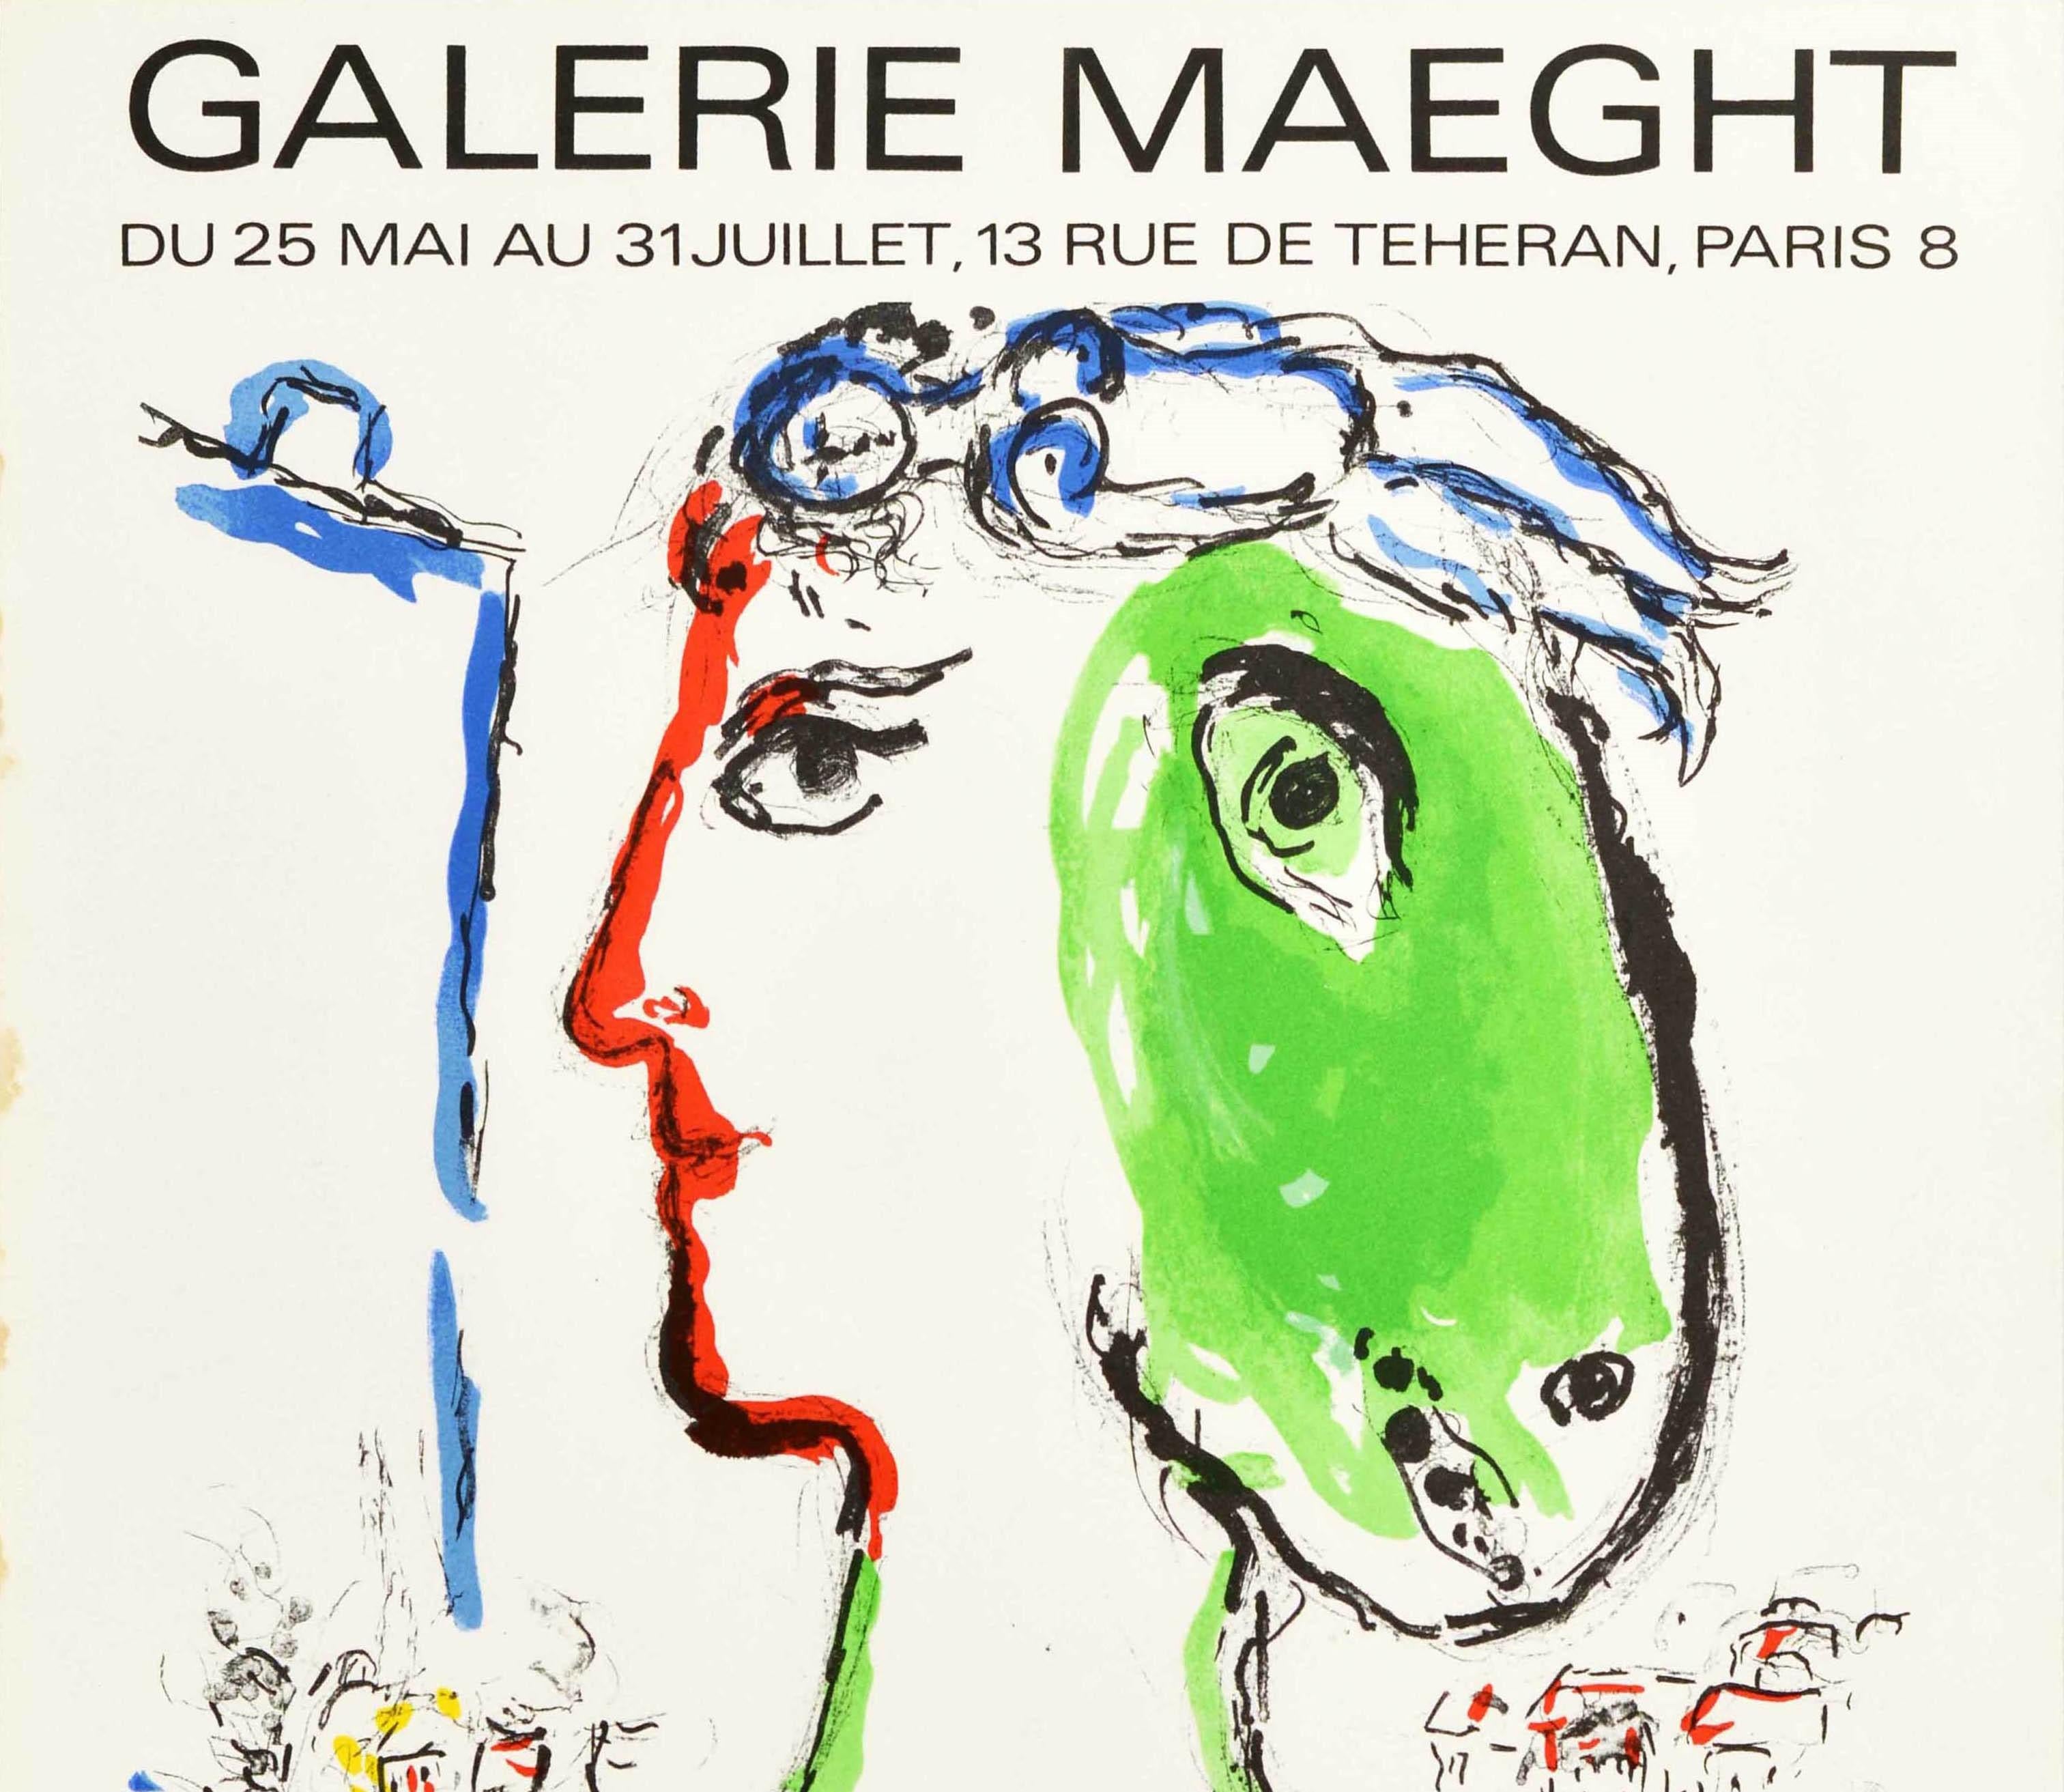 Originelles Plakat für eine Kunstausstellung im Vintage-Stil - Chagall Galerie Maeght Paris - mit der Darstellung des Künstlers Marc Chagall (1887-1985): Der Künstler als Phönix zeigt einen Kopf mit dem Gesicht eines Mannes, auf der anderen Seite